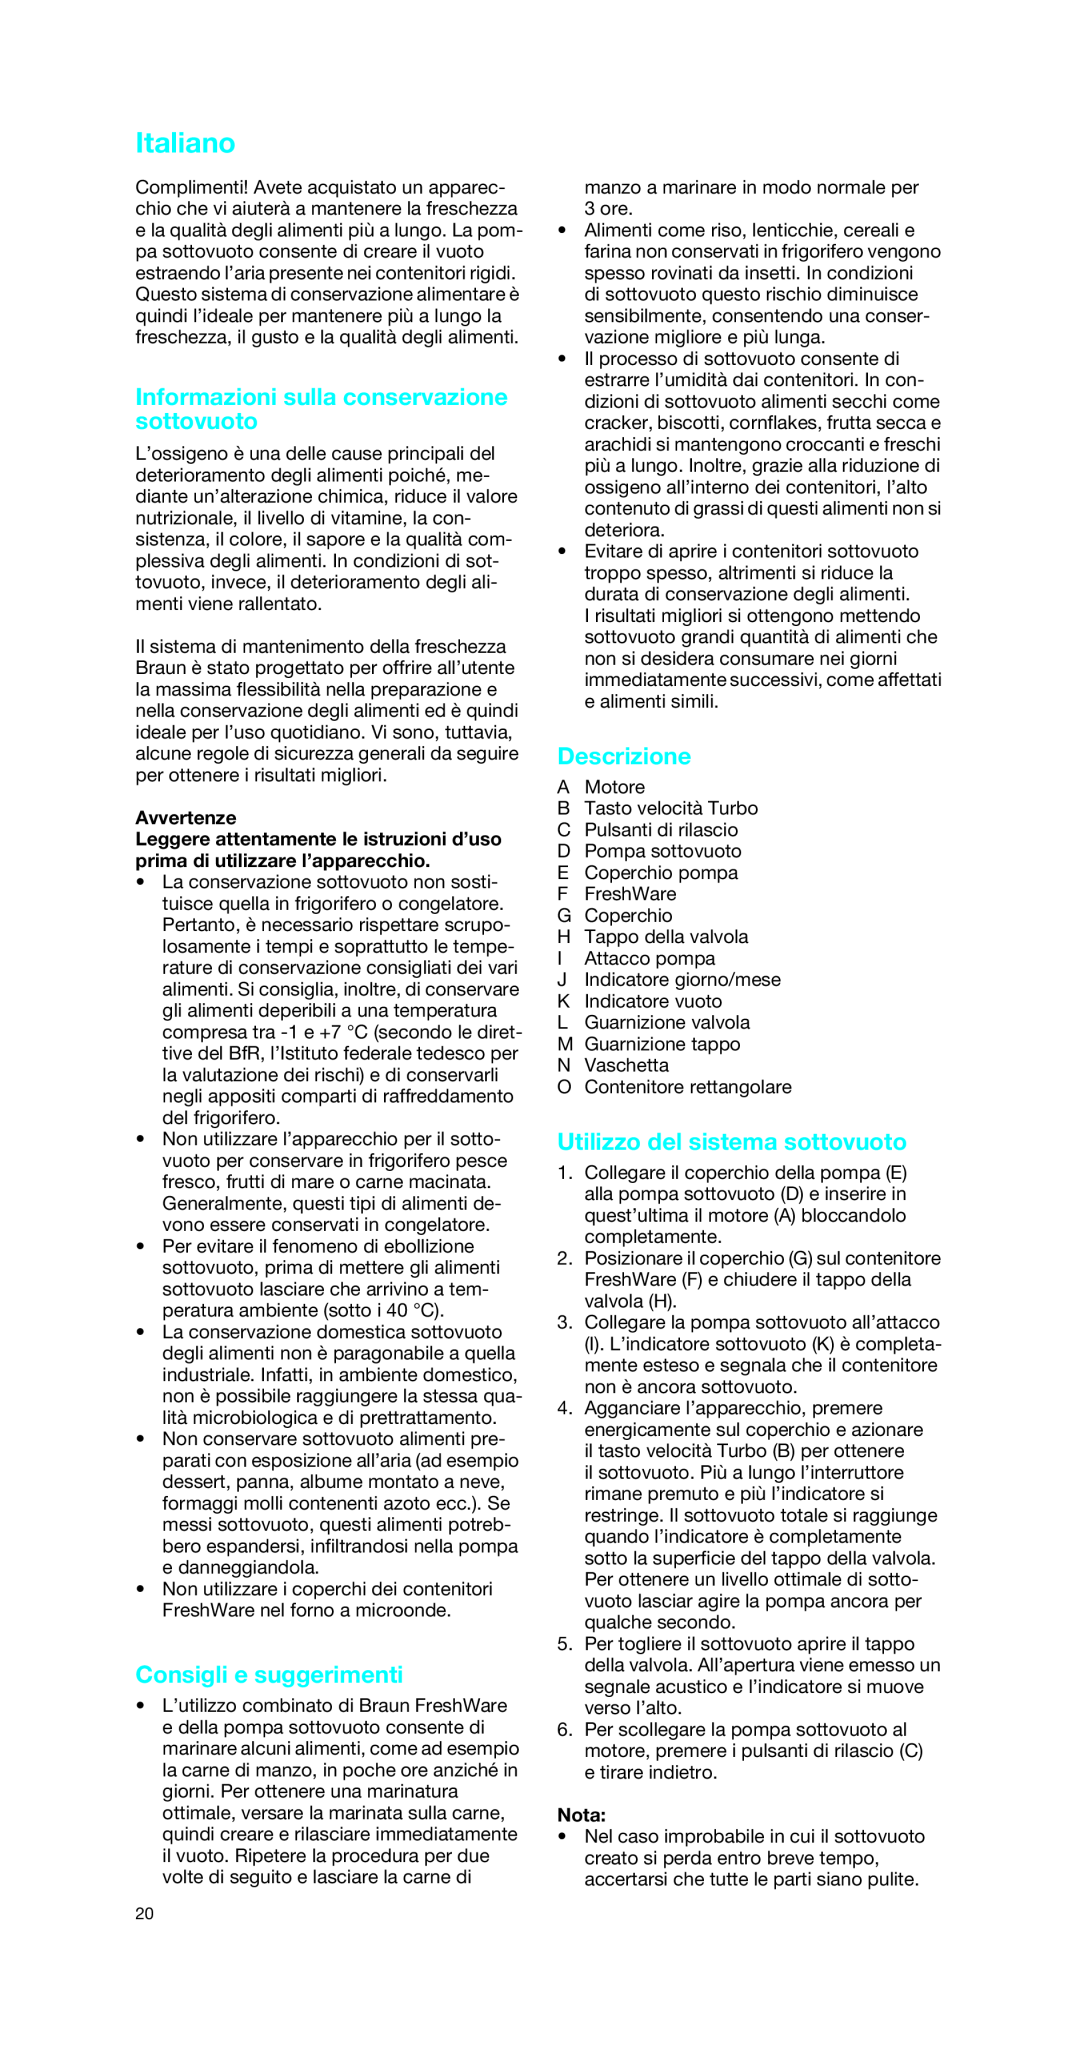 Braun MR 6550 V Italiano, Informazioni sulla conservazione sottovuoto, Consigli e suggerimenti, Descrizione, Avvertenze 